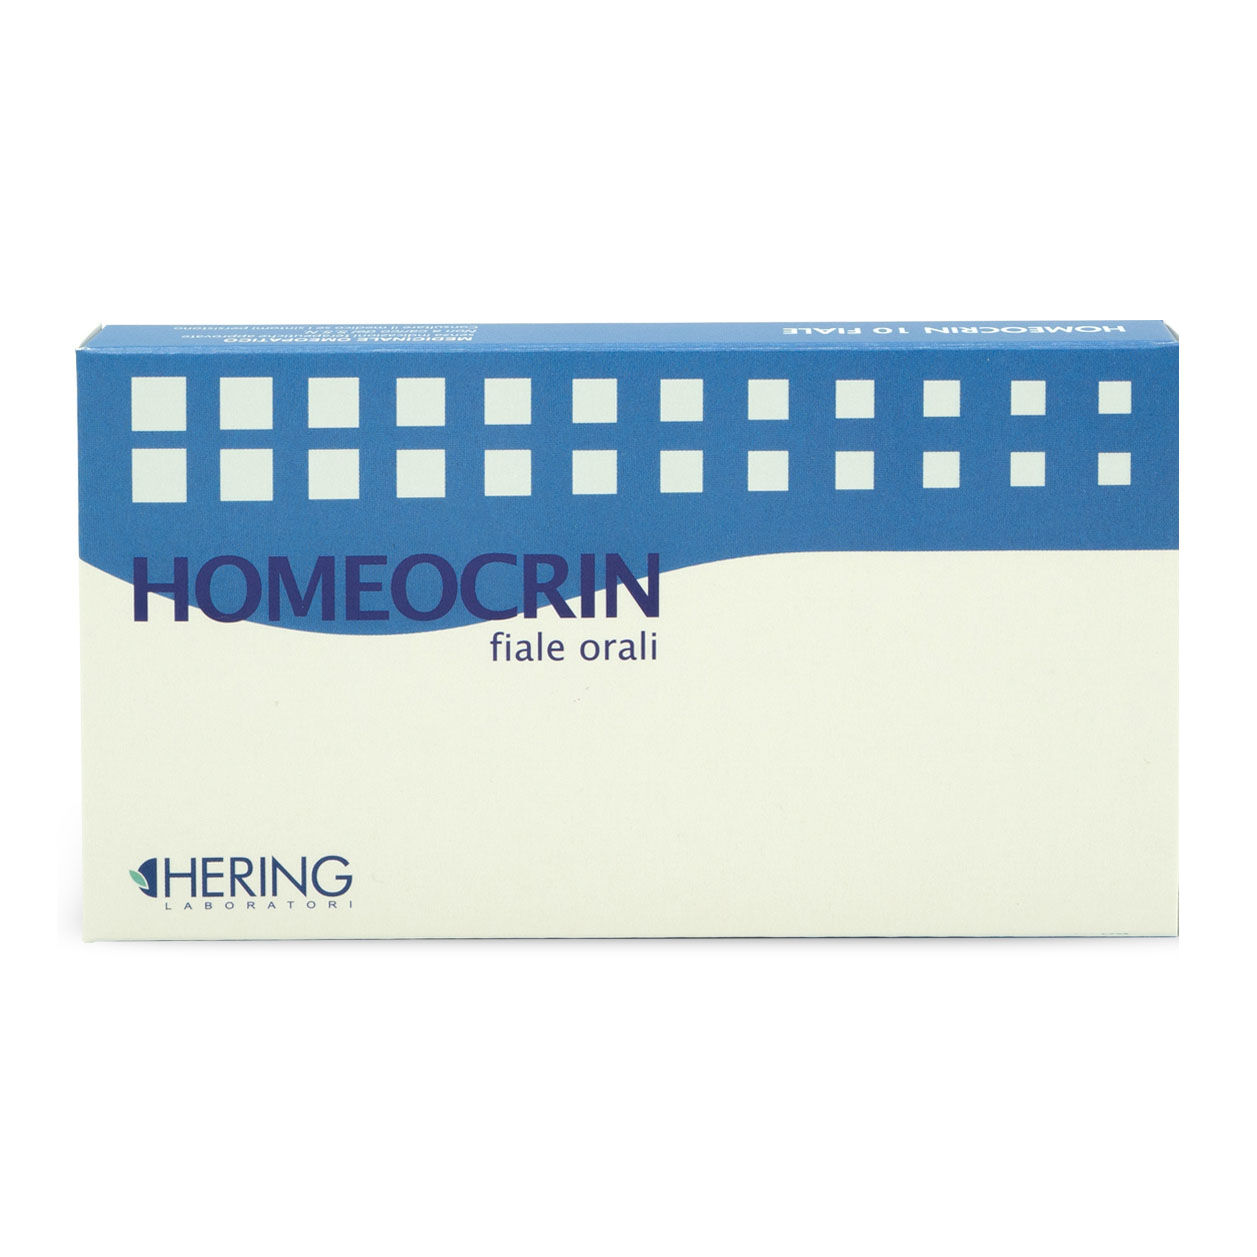 hering Homeomelis homeocrin 15 10f 2m